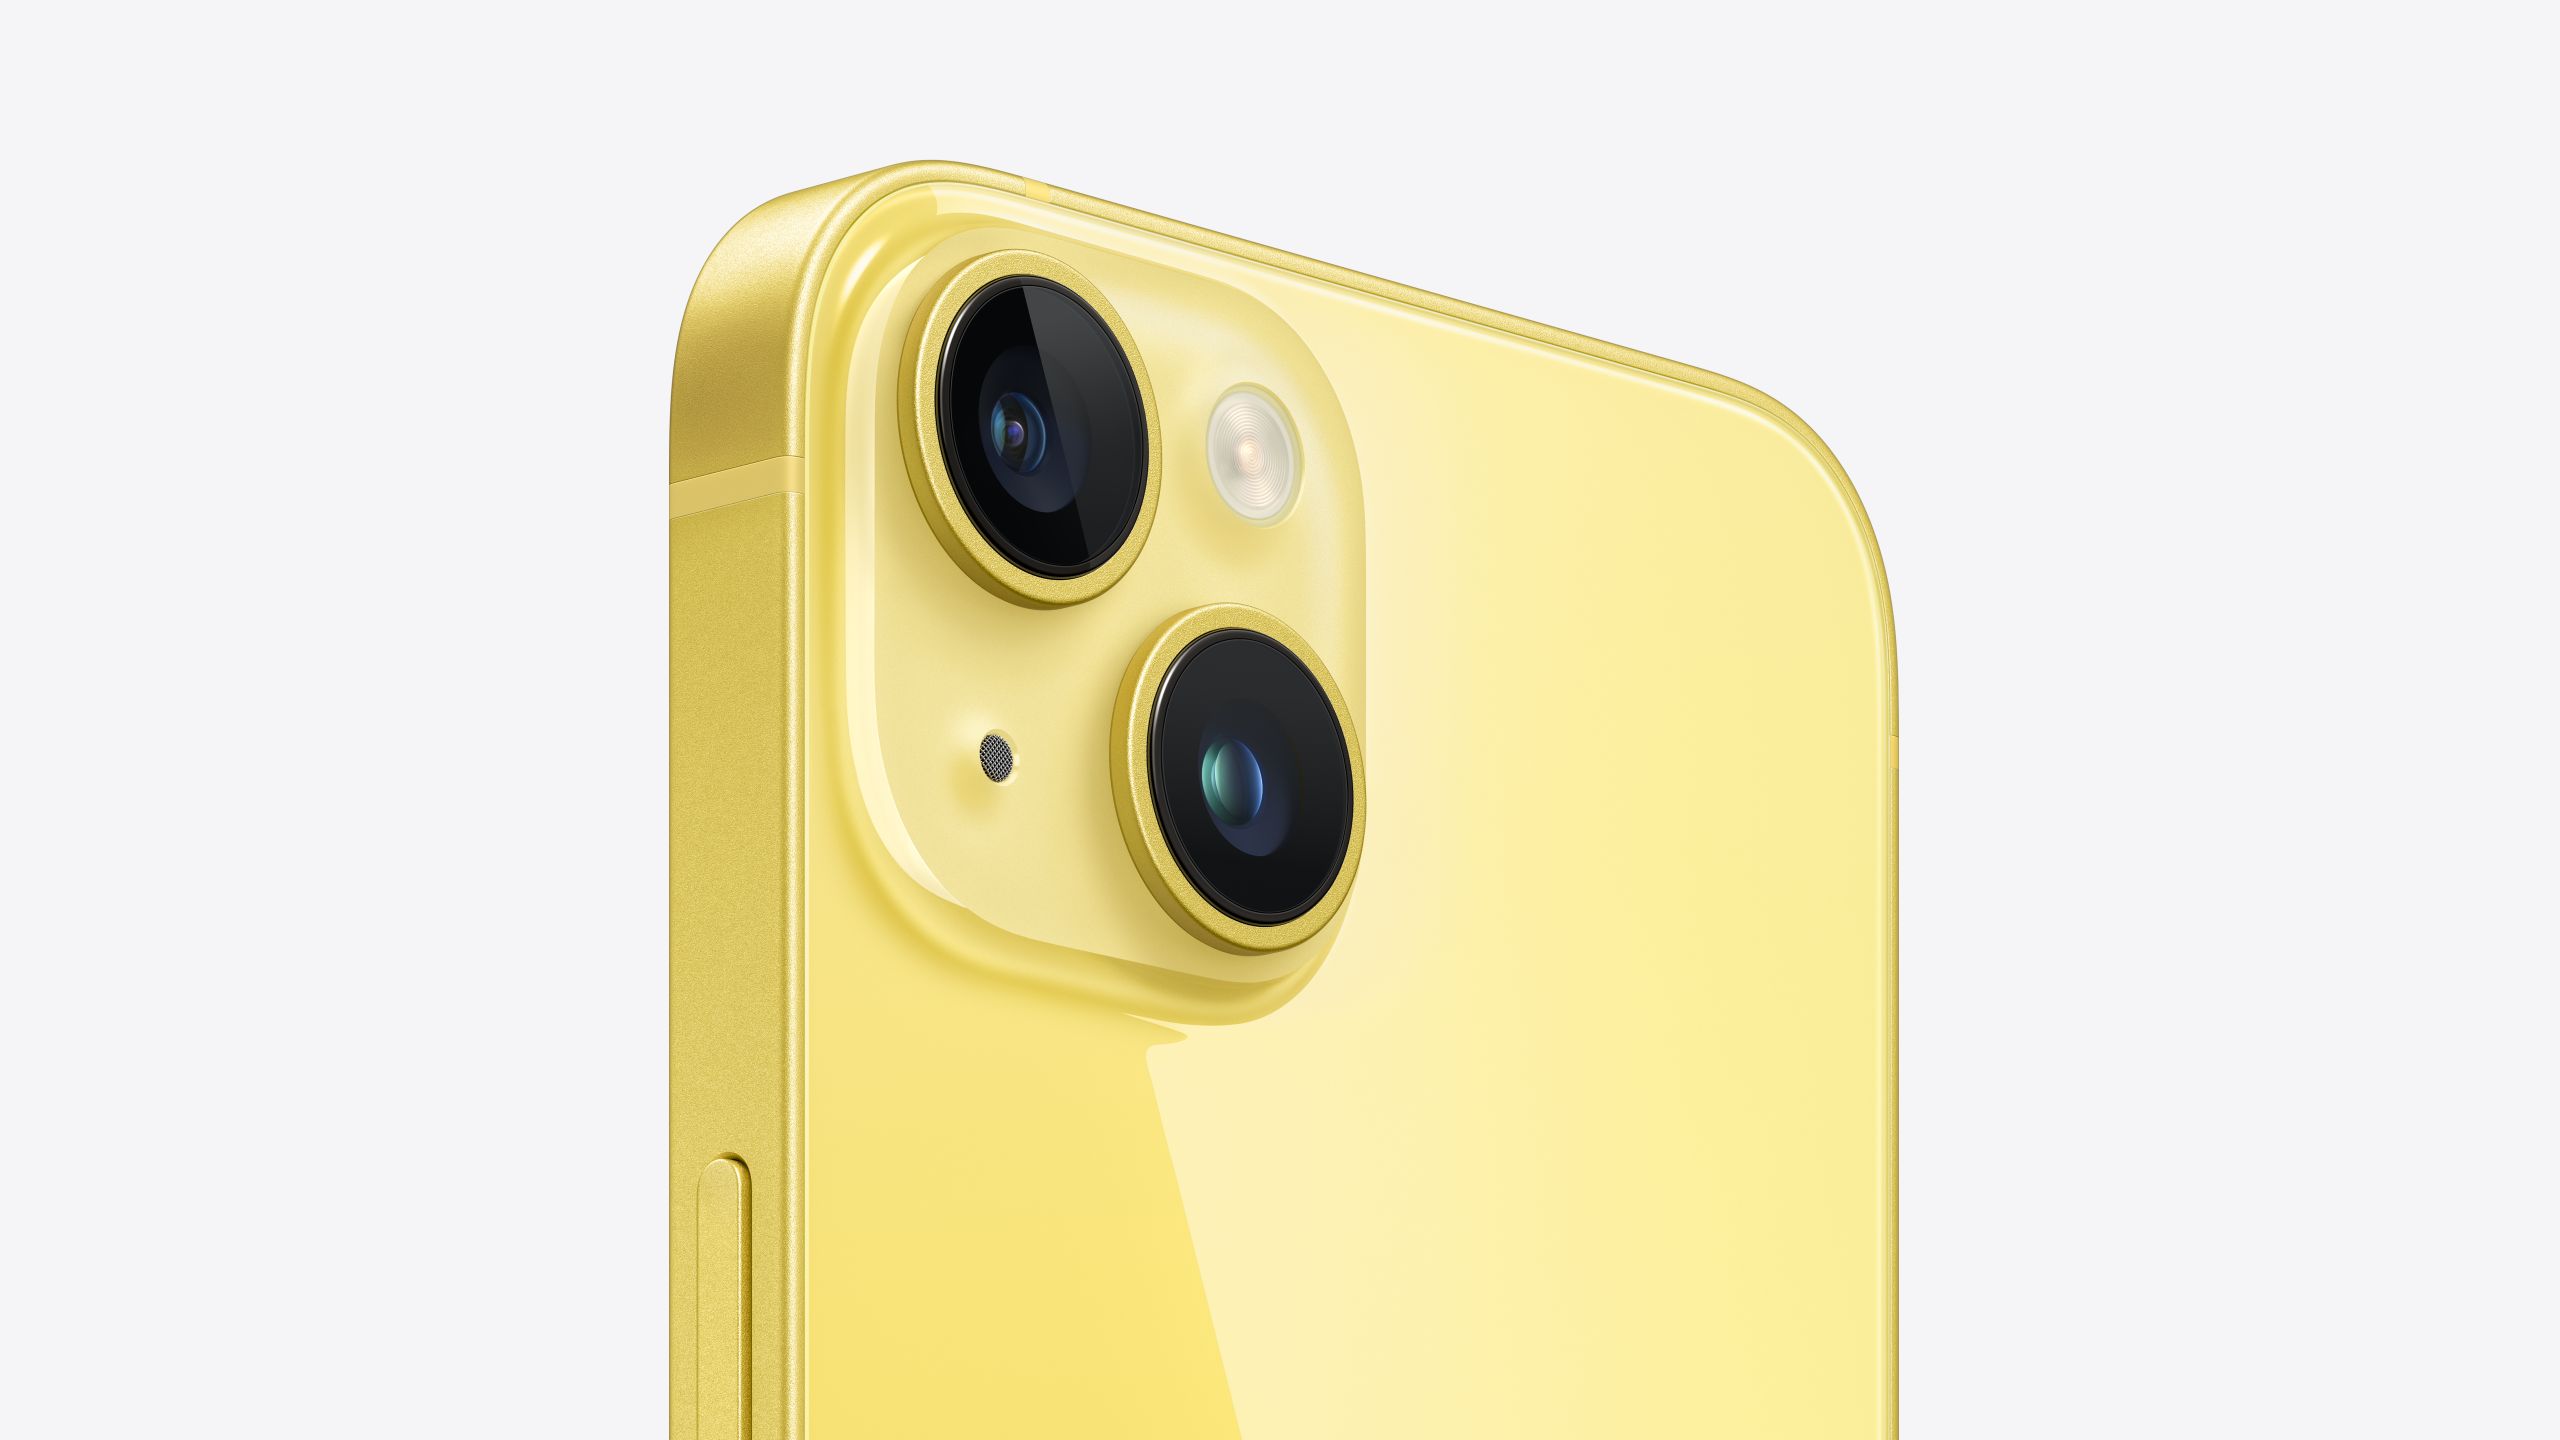 iPhone 14 i iPhone 14 Plus dostępne w wiosennym jaskrawym kolorze żółtym - cena bez zmian